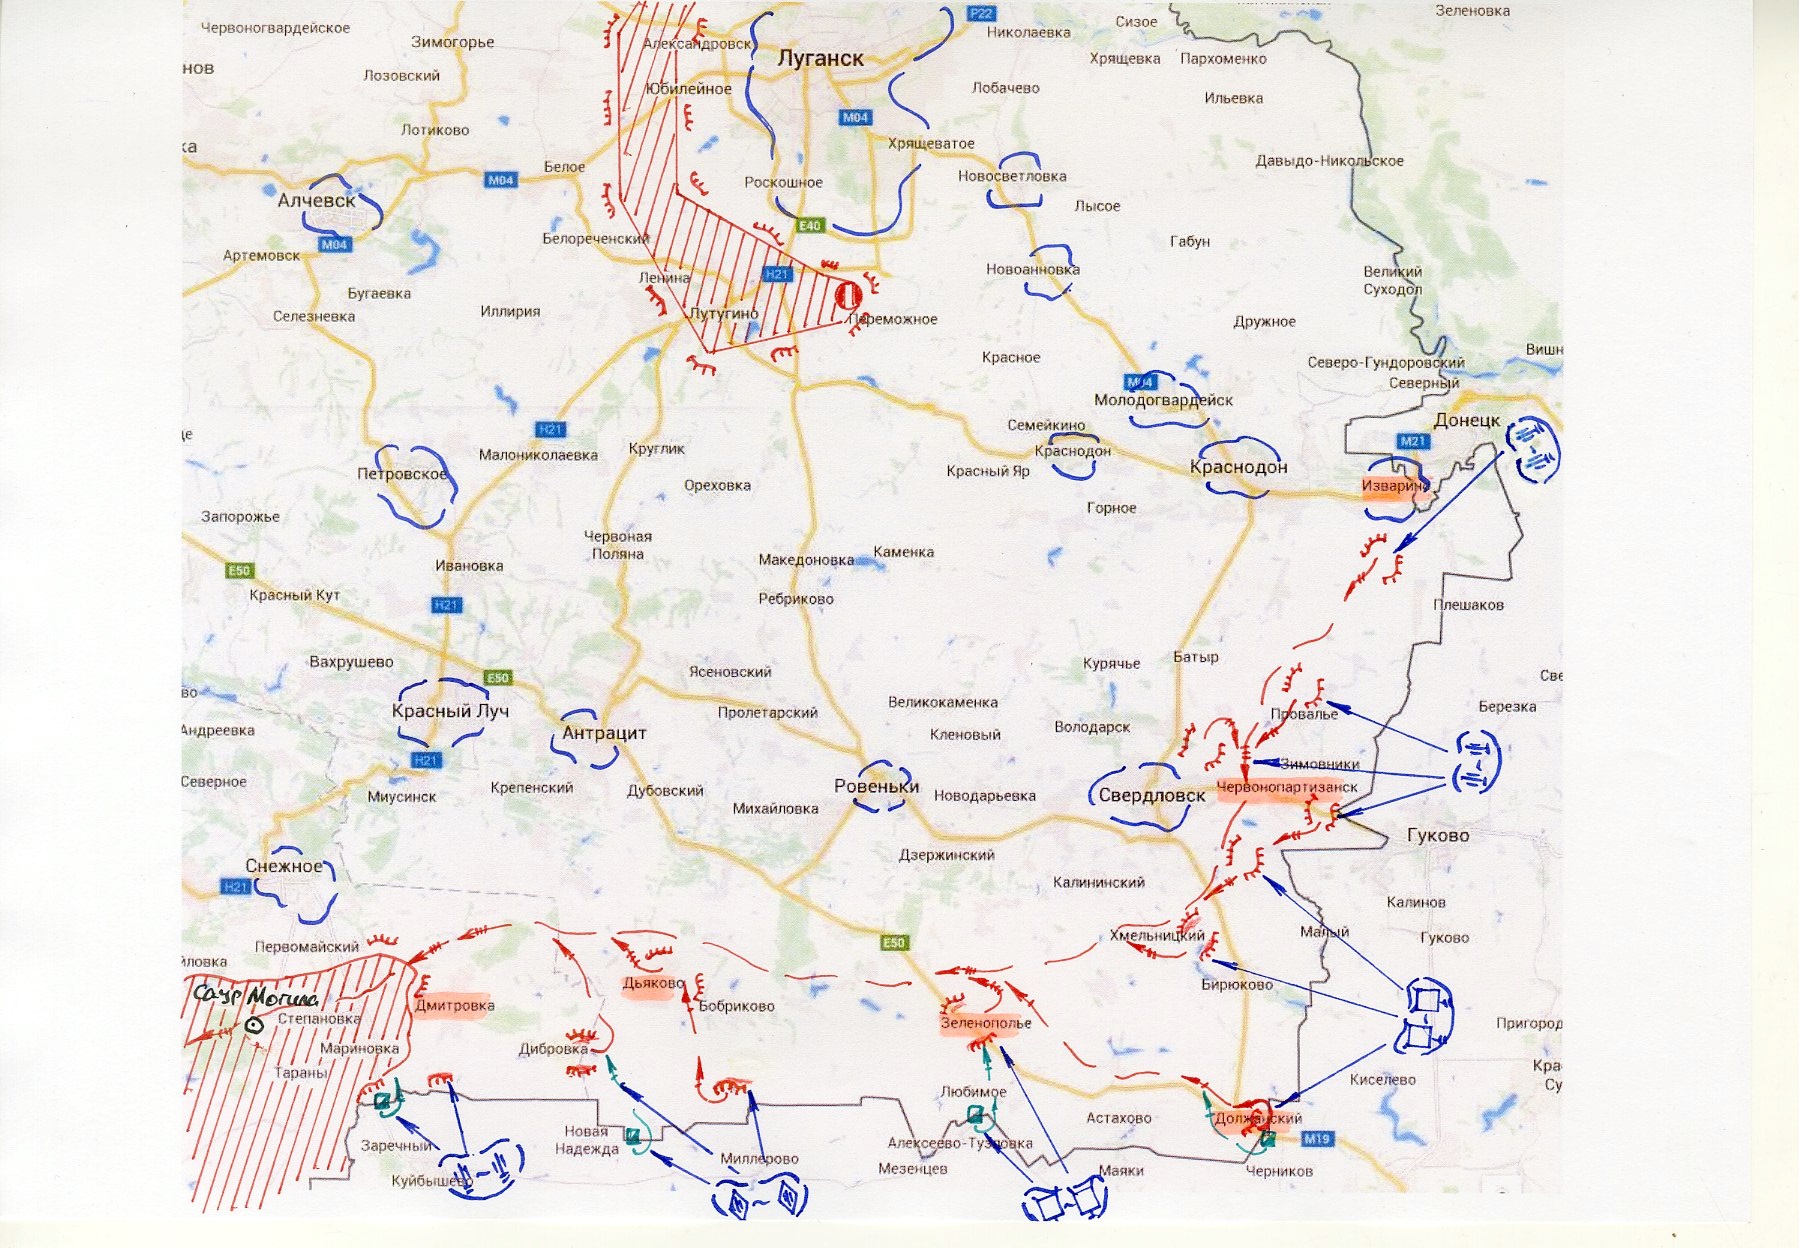 Аналіз ведення АТО та наслідків вторгнення Росії в Україну у серпні-вересні 2014 року - фото 2